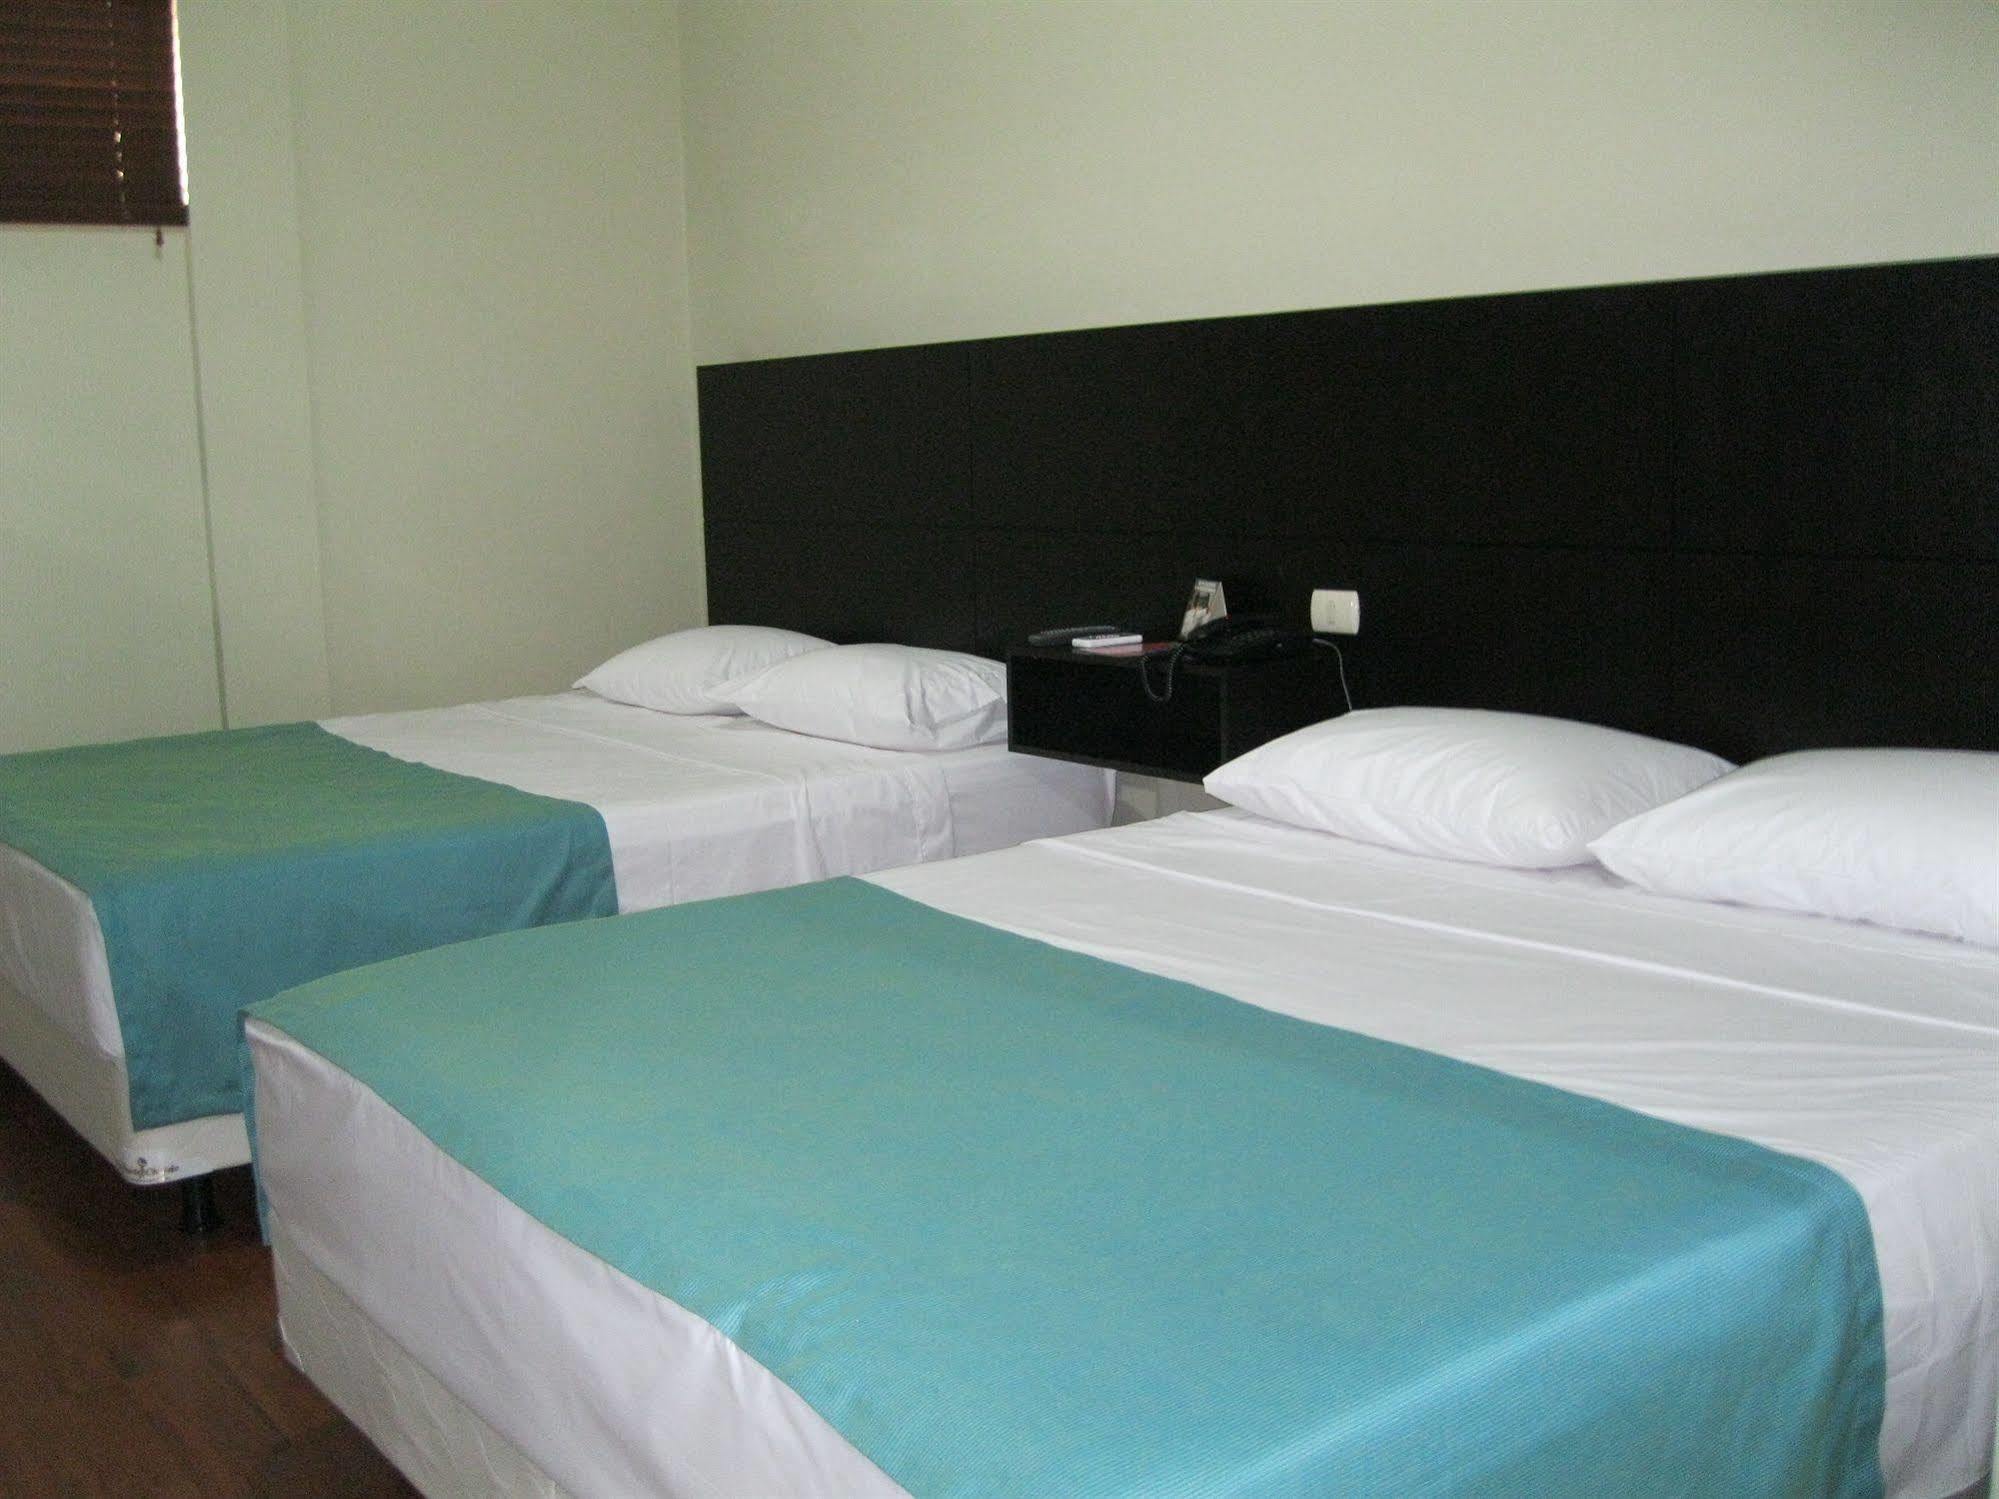 Apartterrazas Guayaquil -Suites&Lofts- Exterior foto